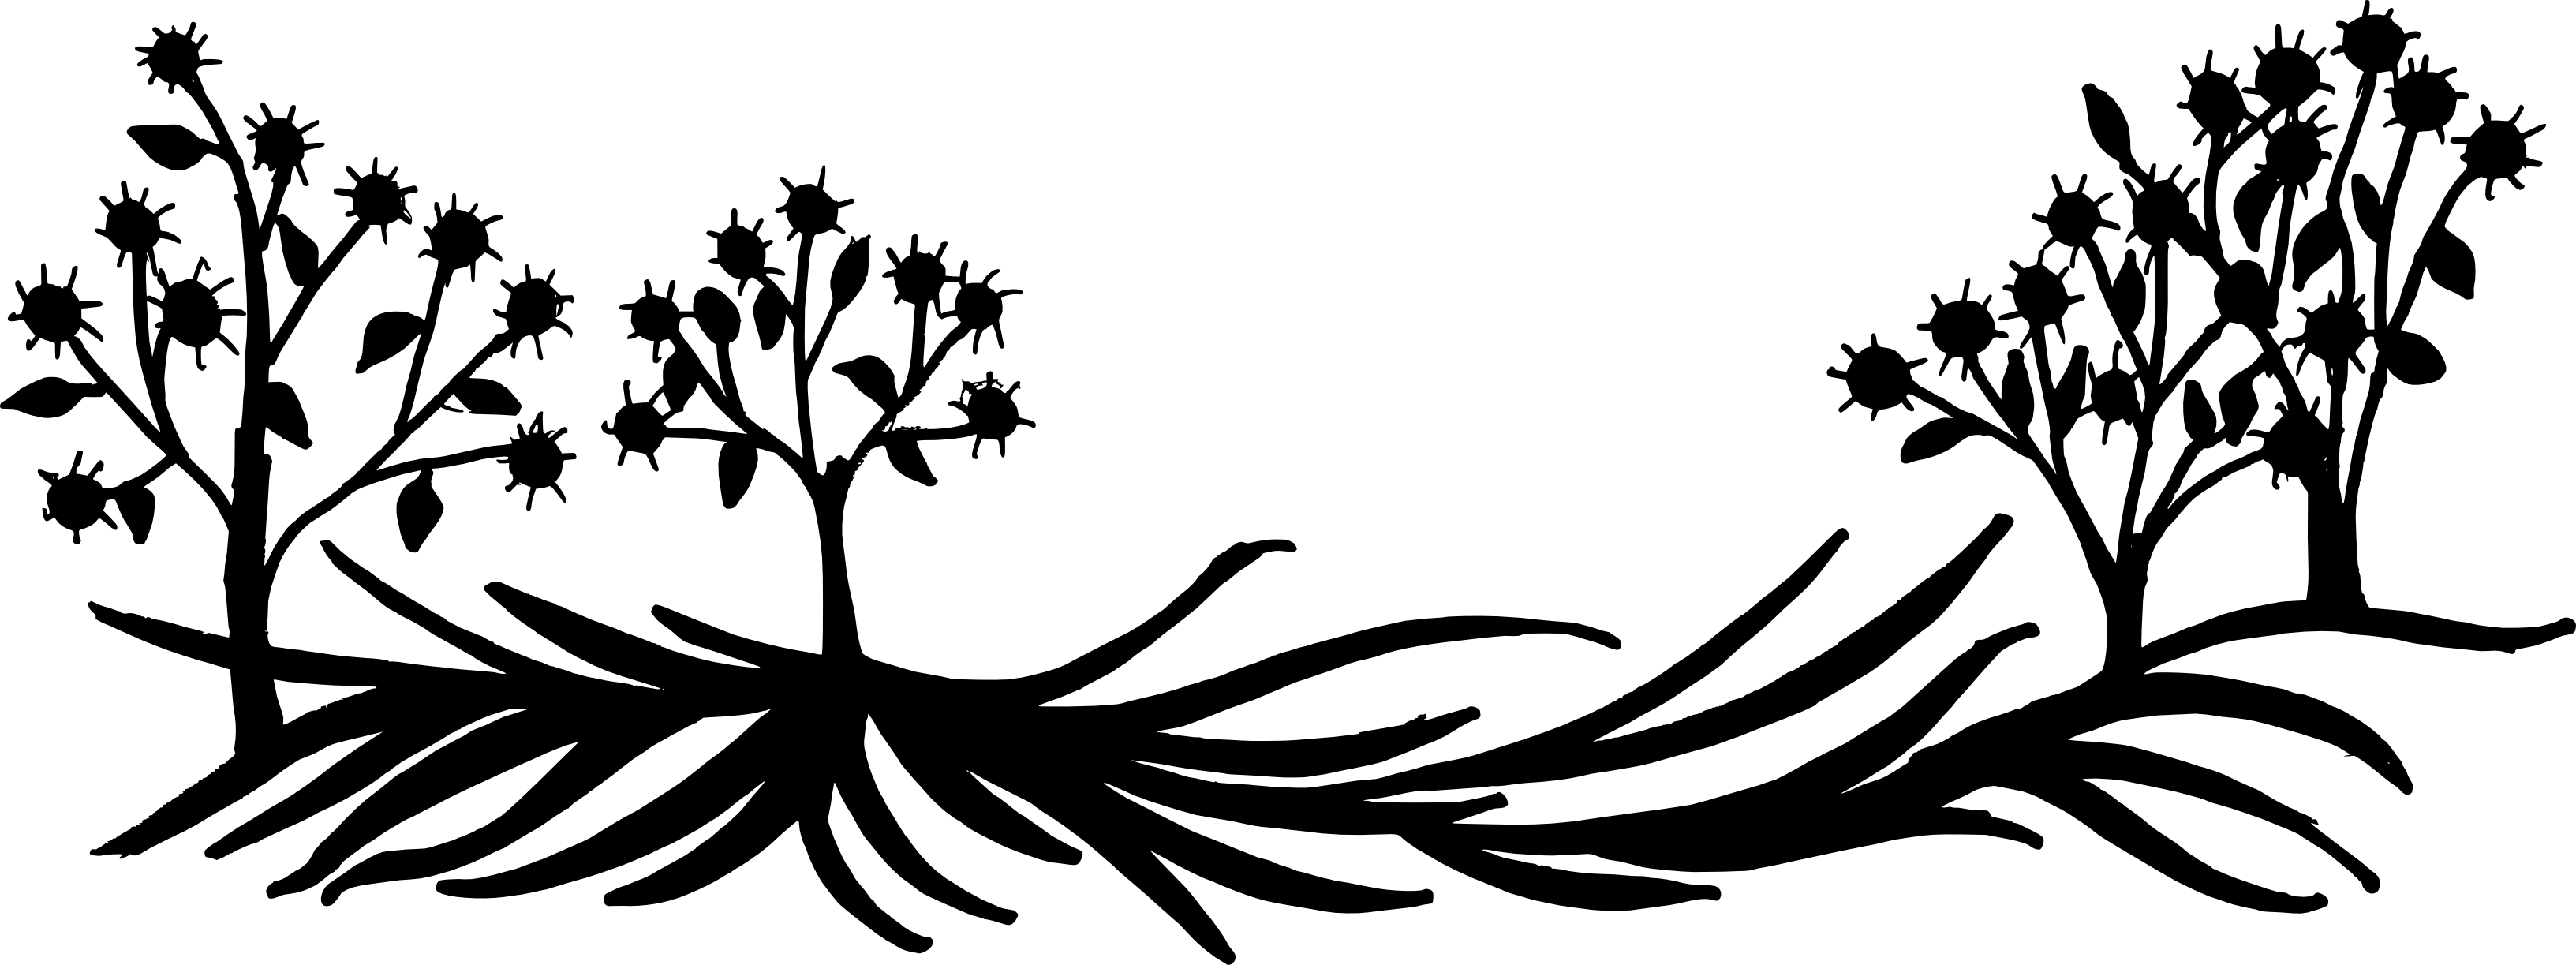 Вихревый цветочный силуэт PNG Image